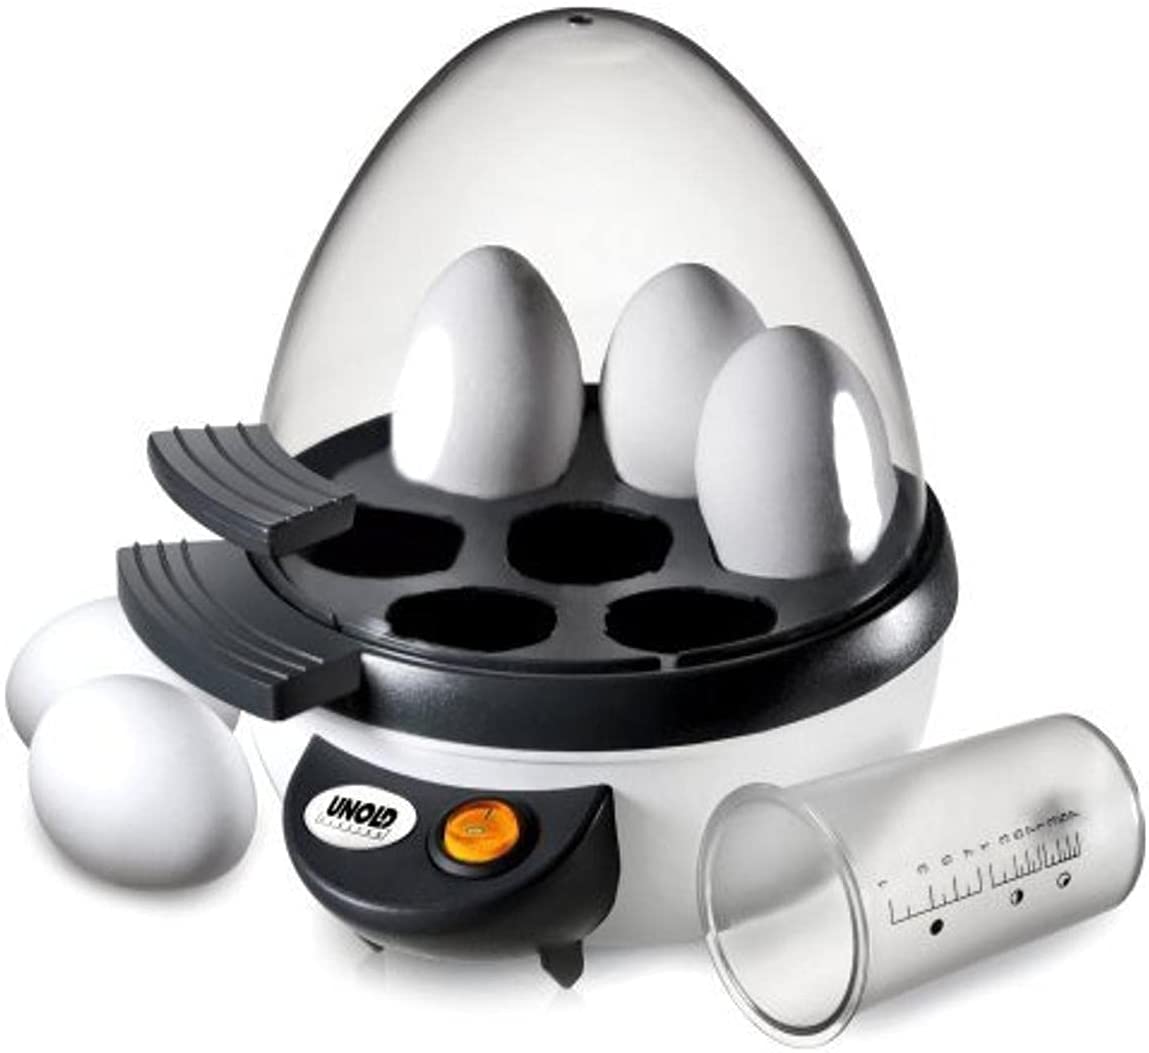 Unold 38641 Egg Boiler, A